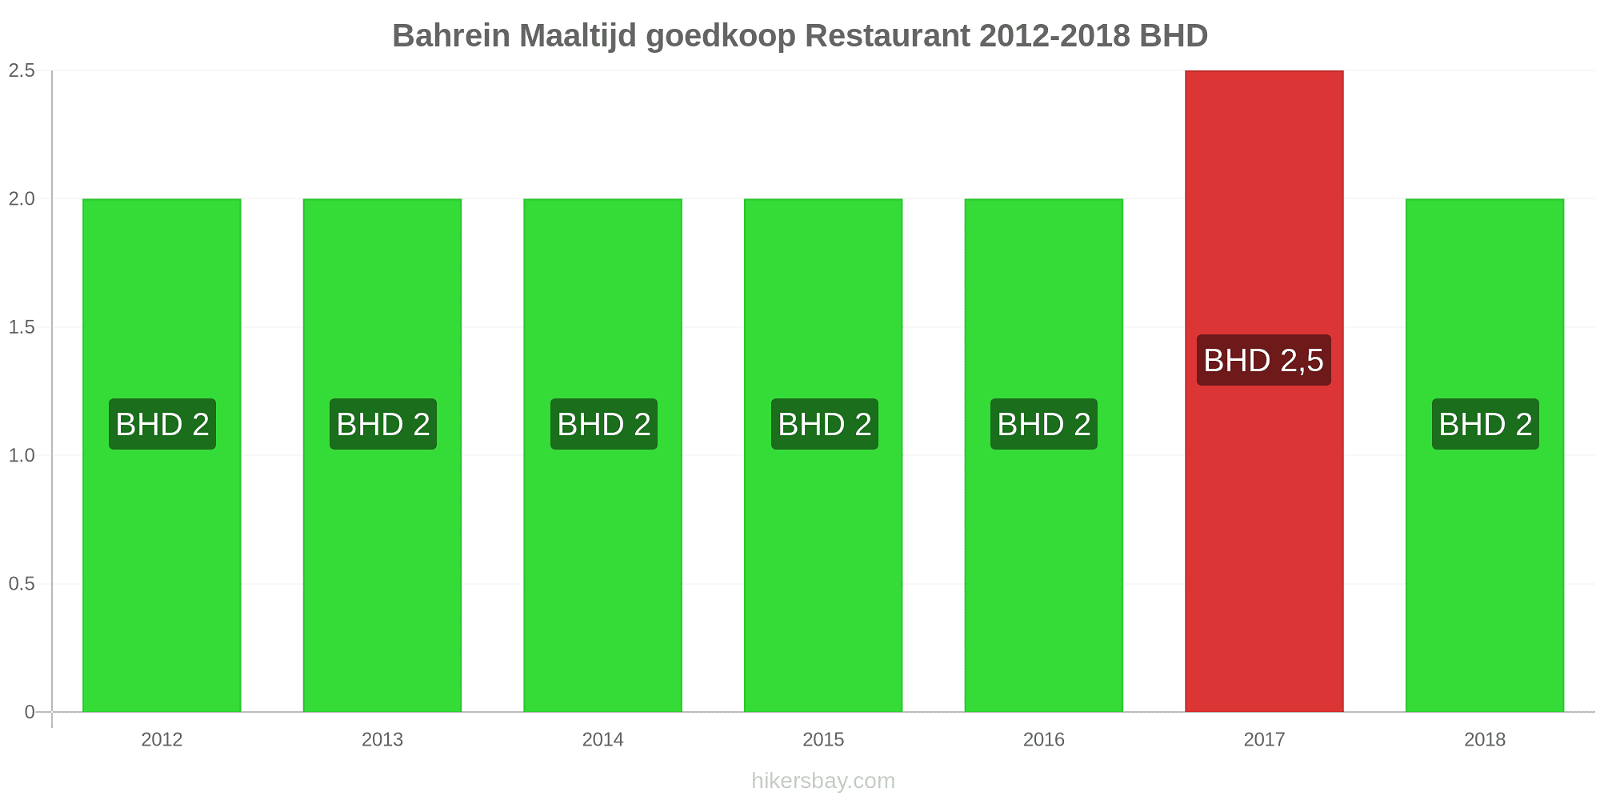 Bahrein prijswijzigingen Maaltijd in een goedkoop restaurant hikersbay.com